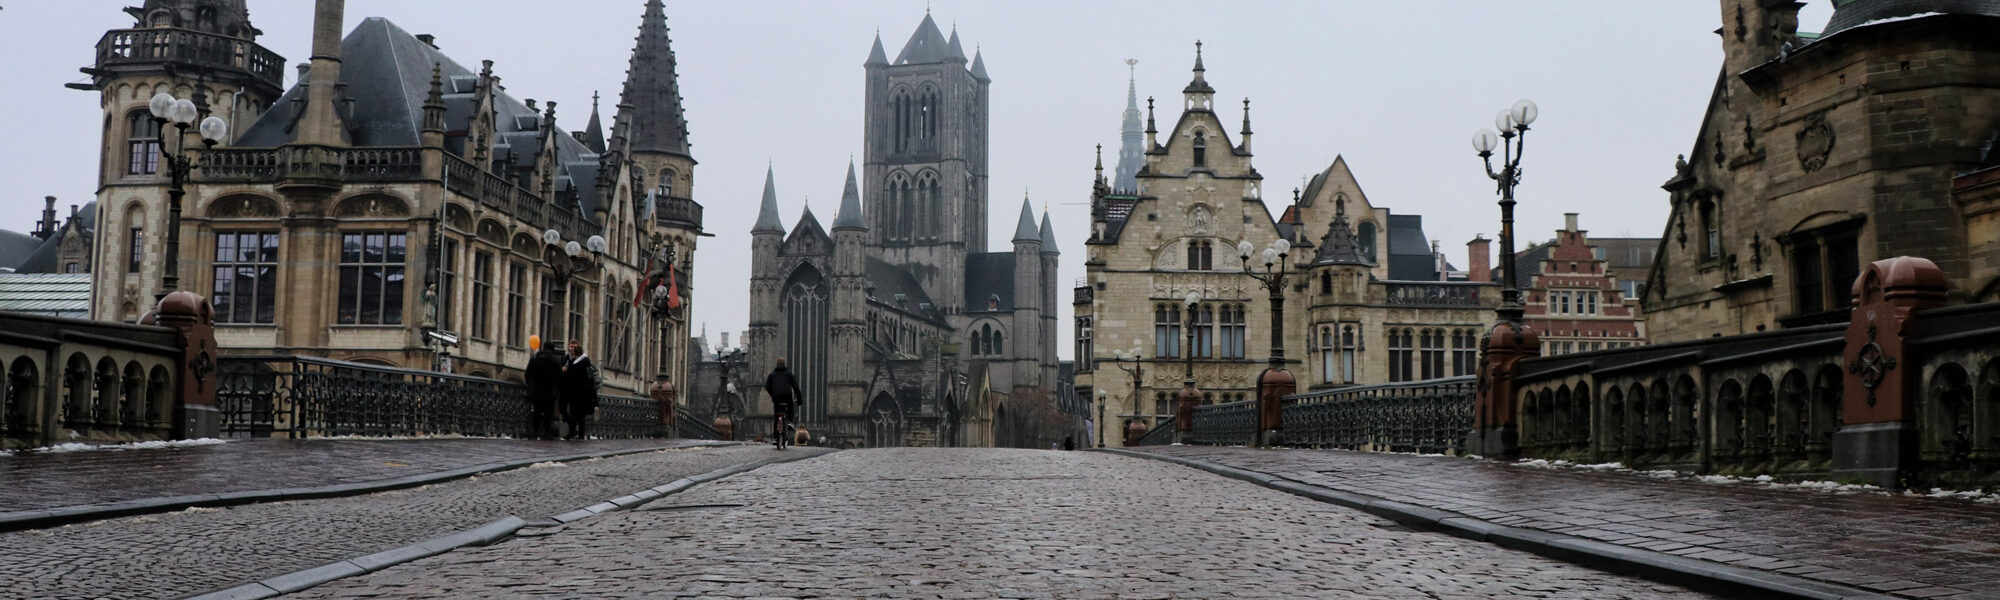 Mijn tips voor Gent - Historische binnenstad